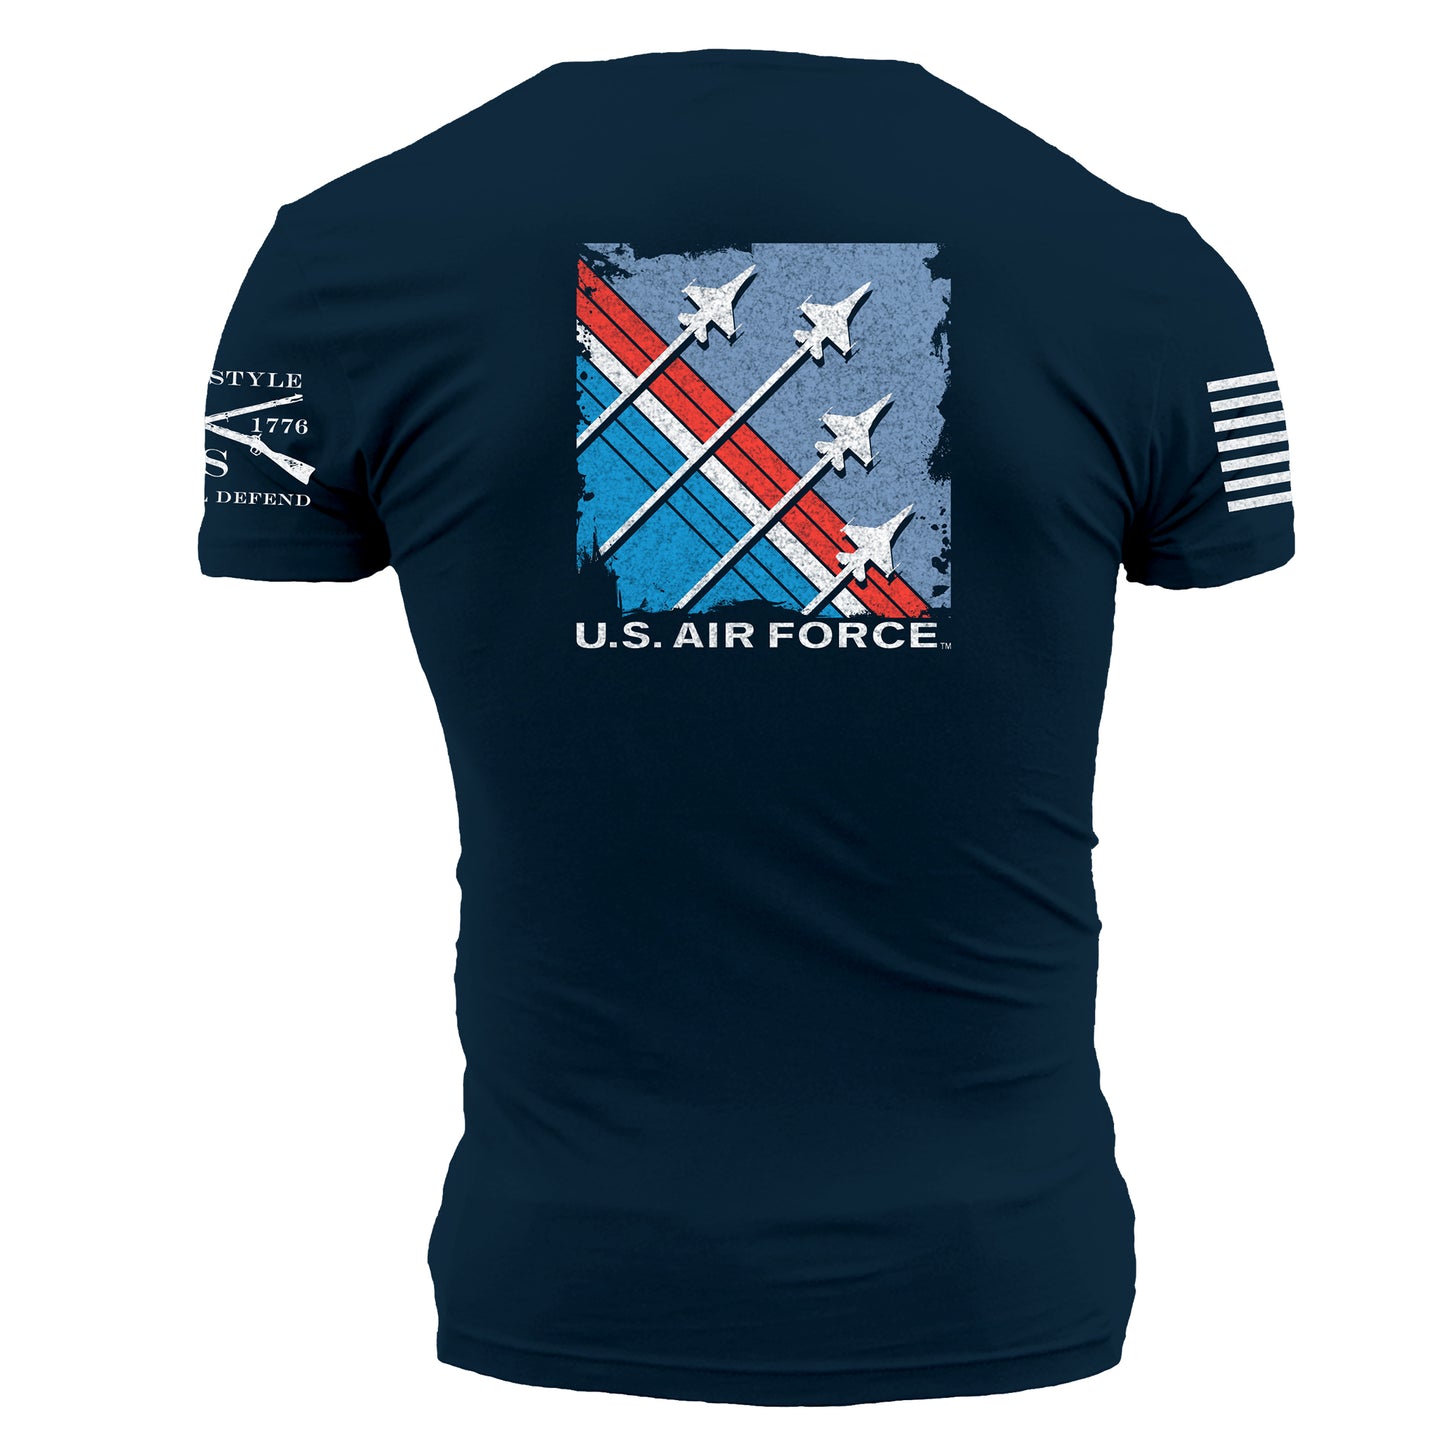 US Air Force Shirts - Military Shirts 